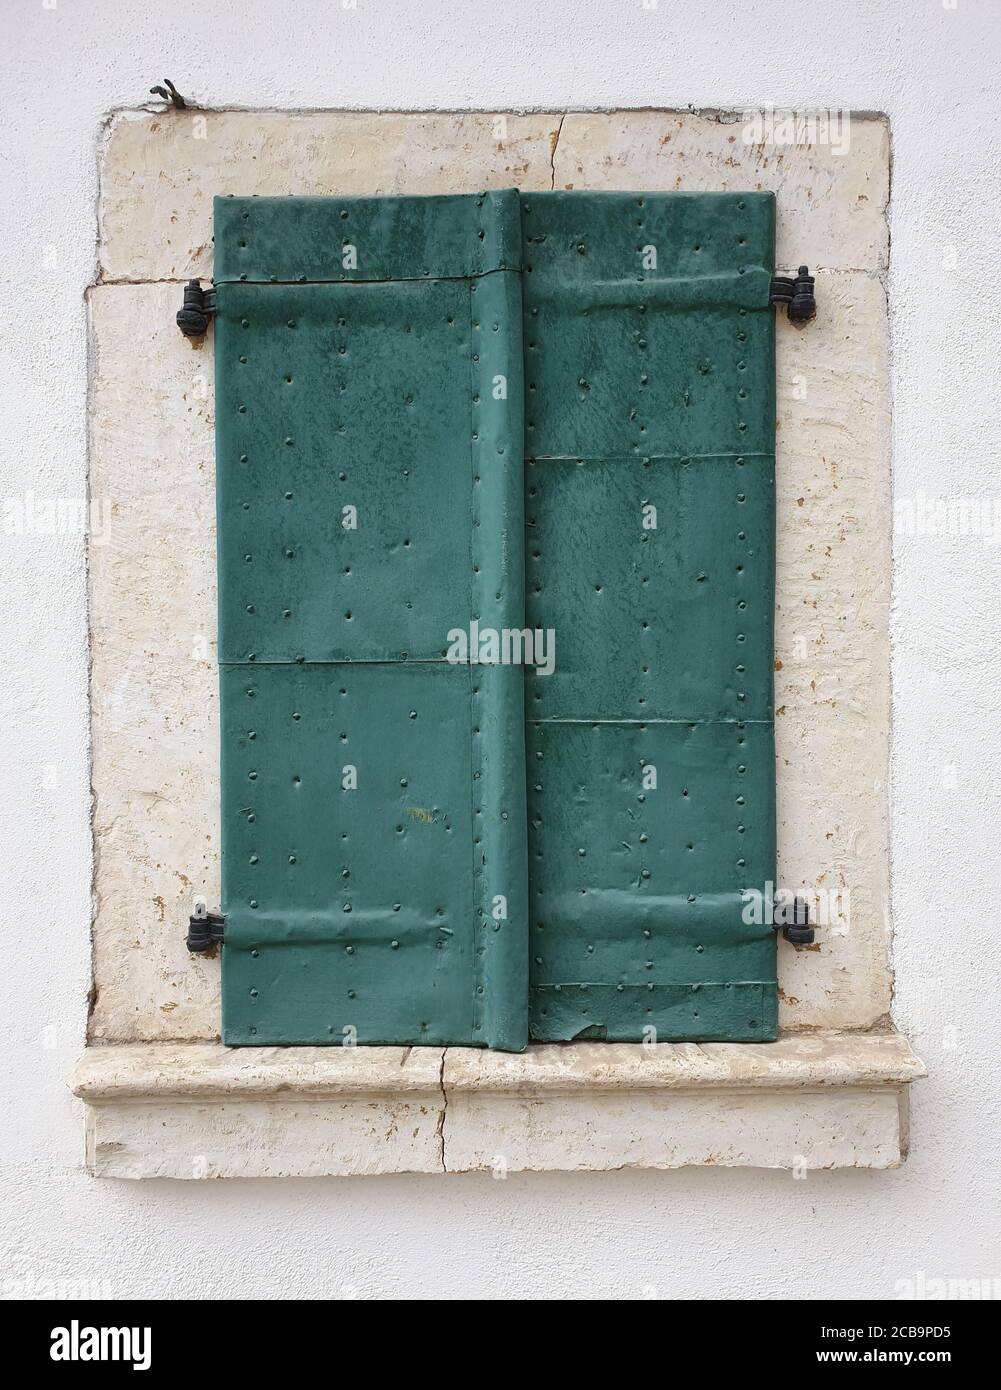 Closed metallic window shutters in Rimetea, Romania. Architecture detail of house window in the village of Rimetea, Torocko, Alba county, Romania Stock Photo